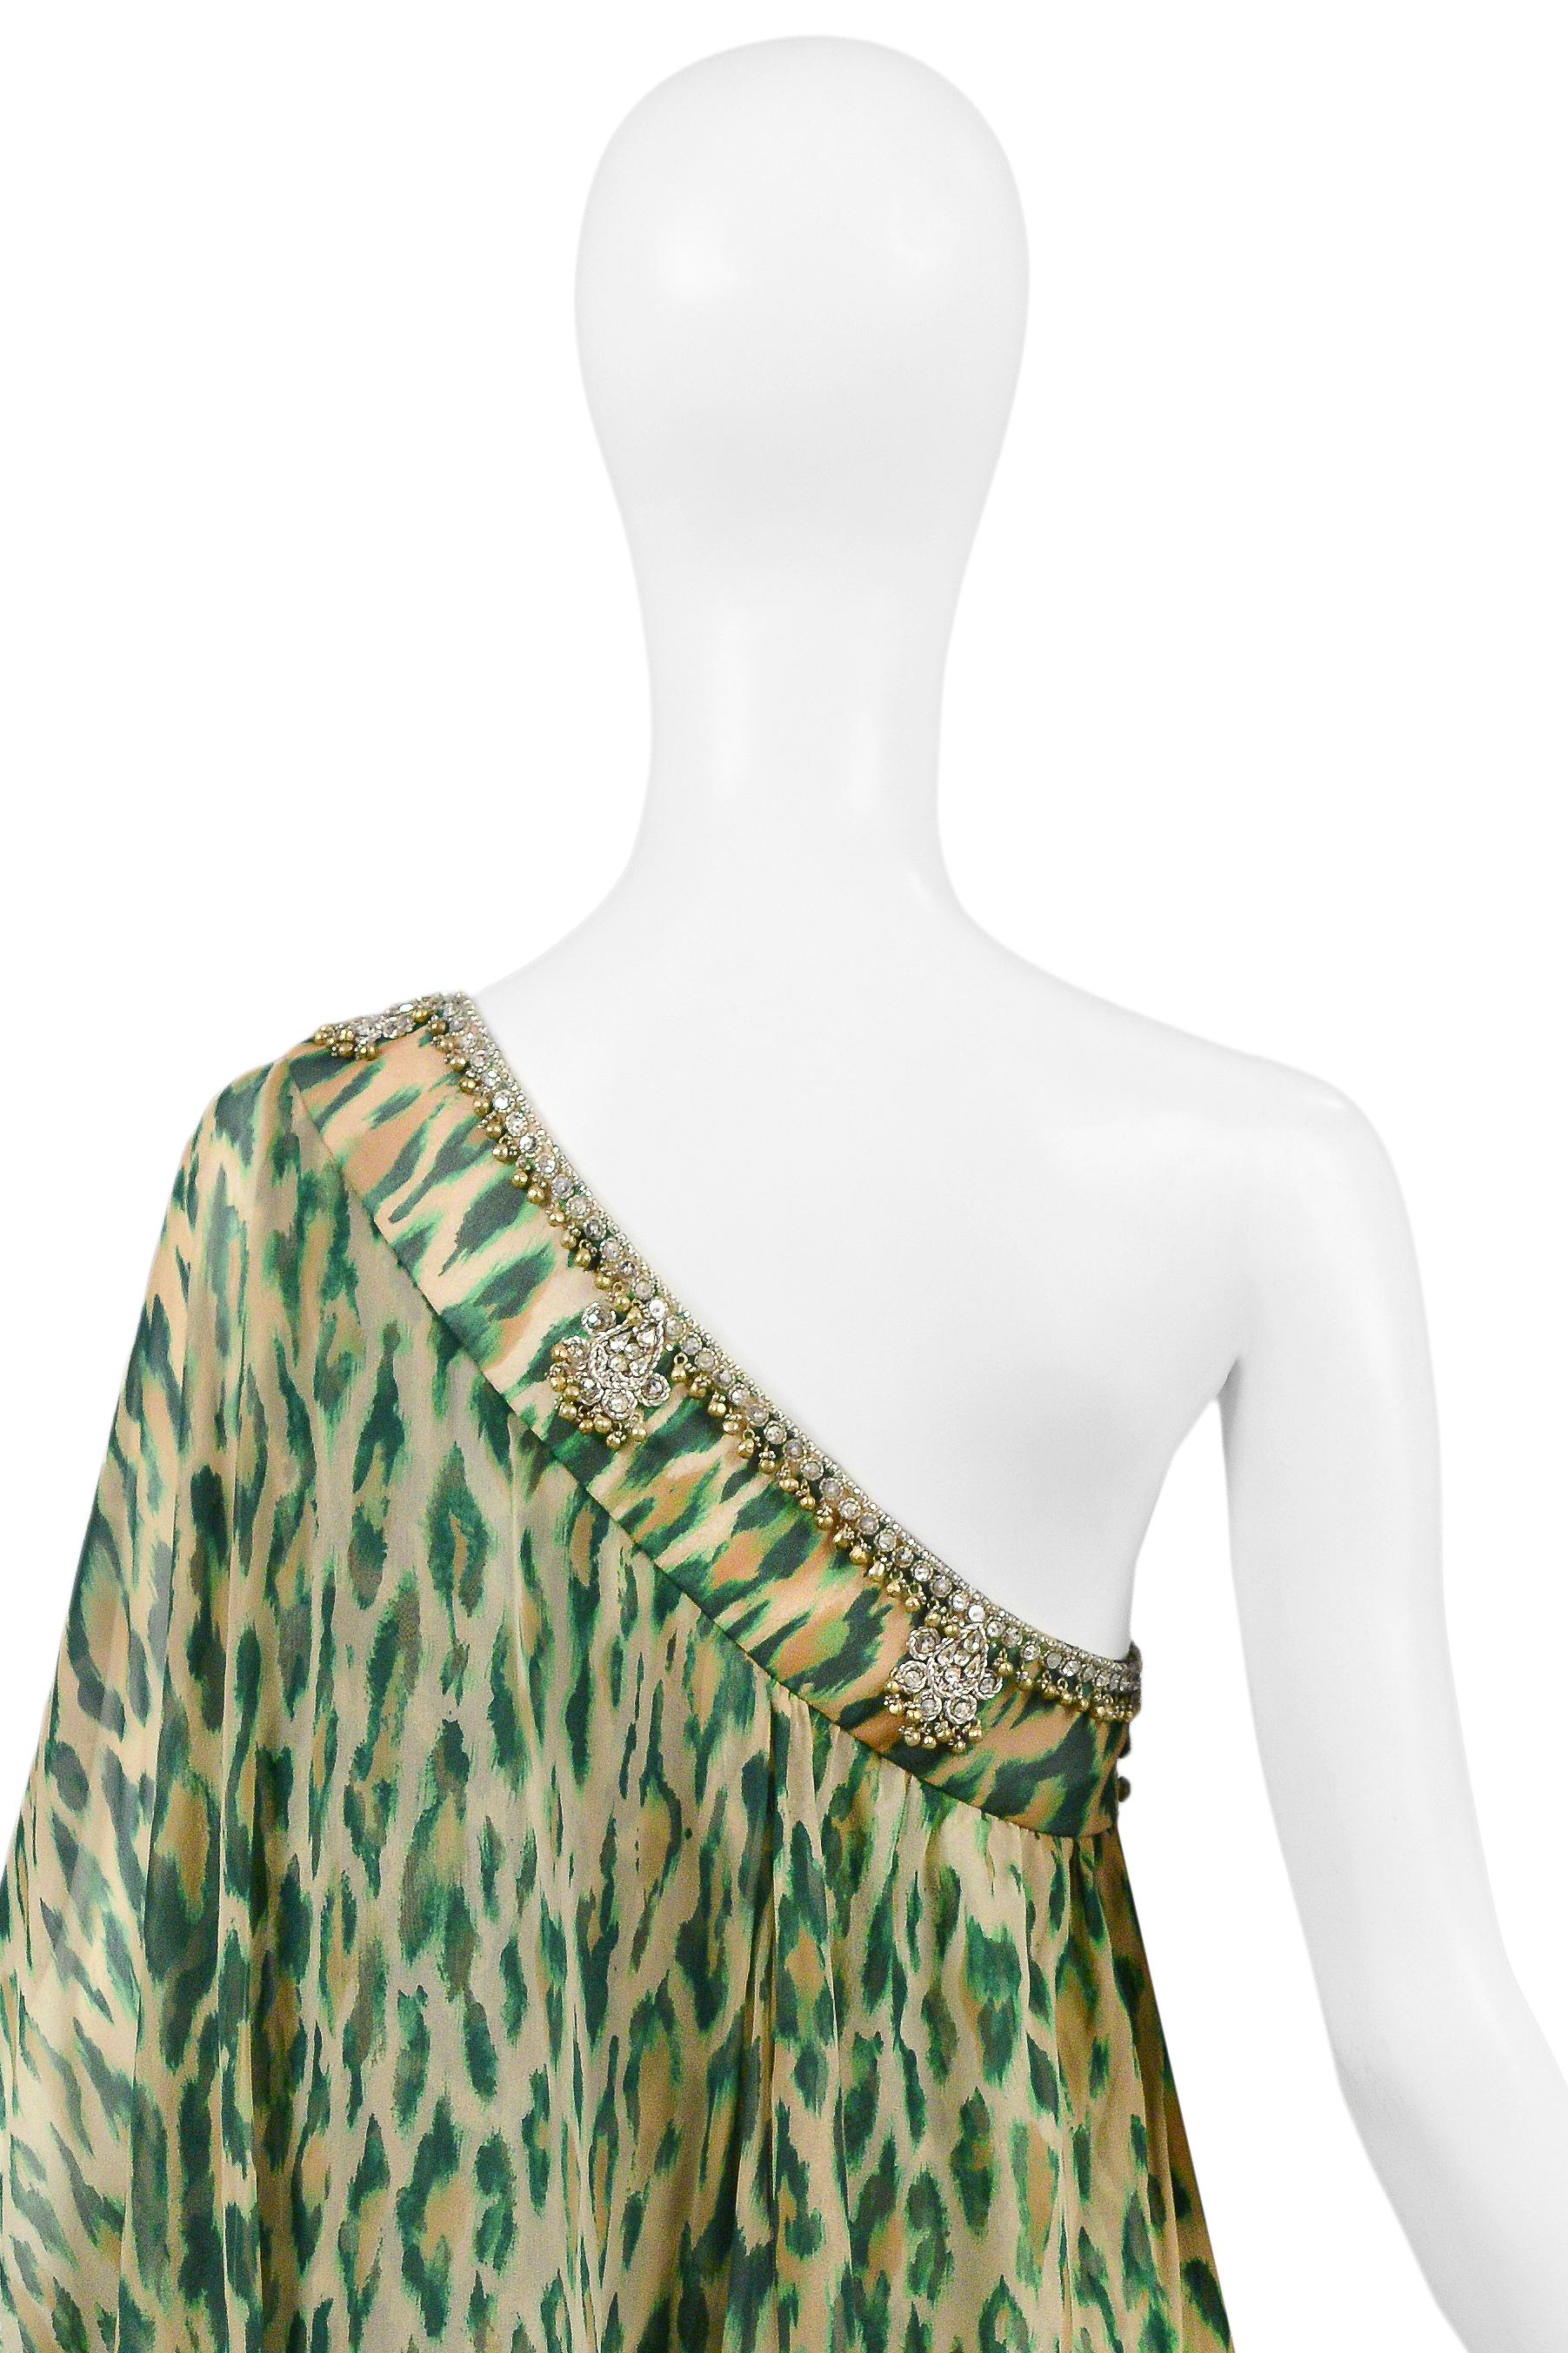 Christian Dior Green Leopard One Shoulder Sari Dress 2008 For Sale 5